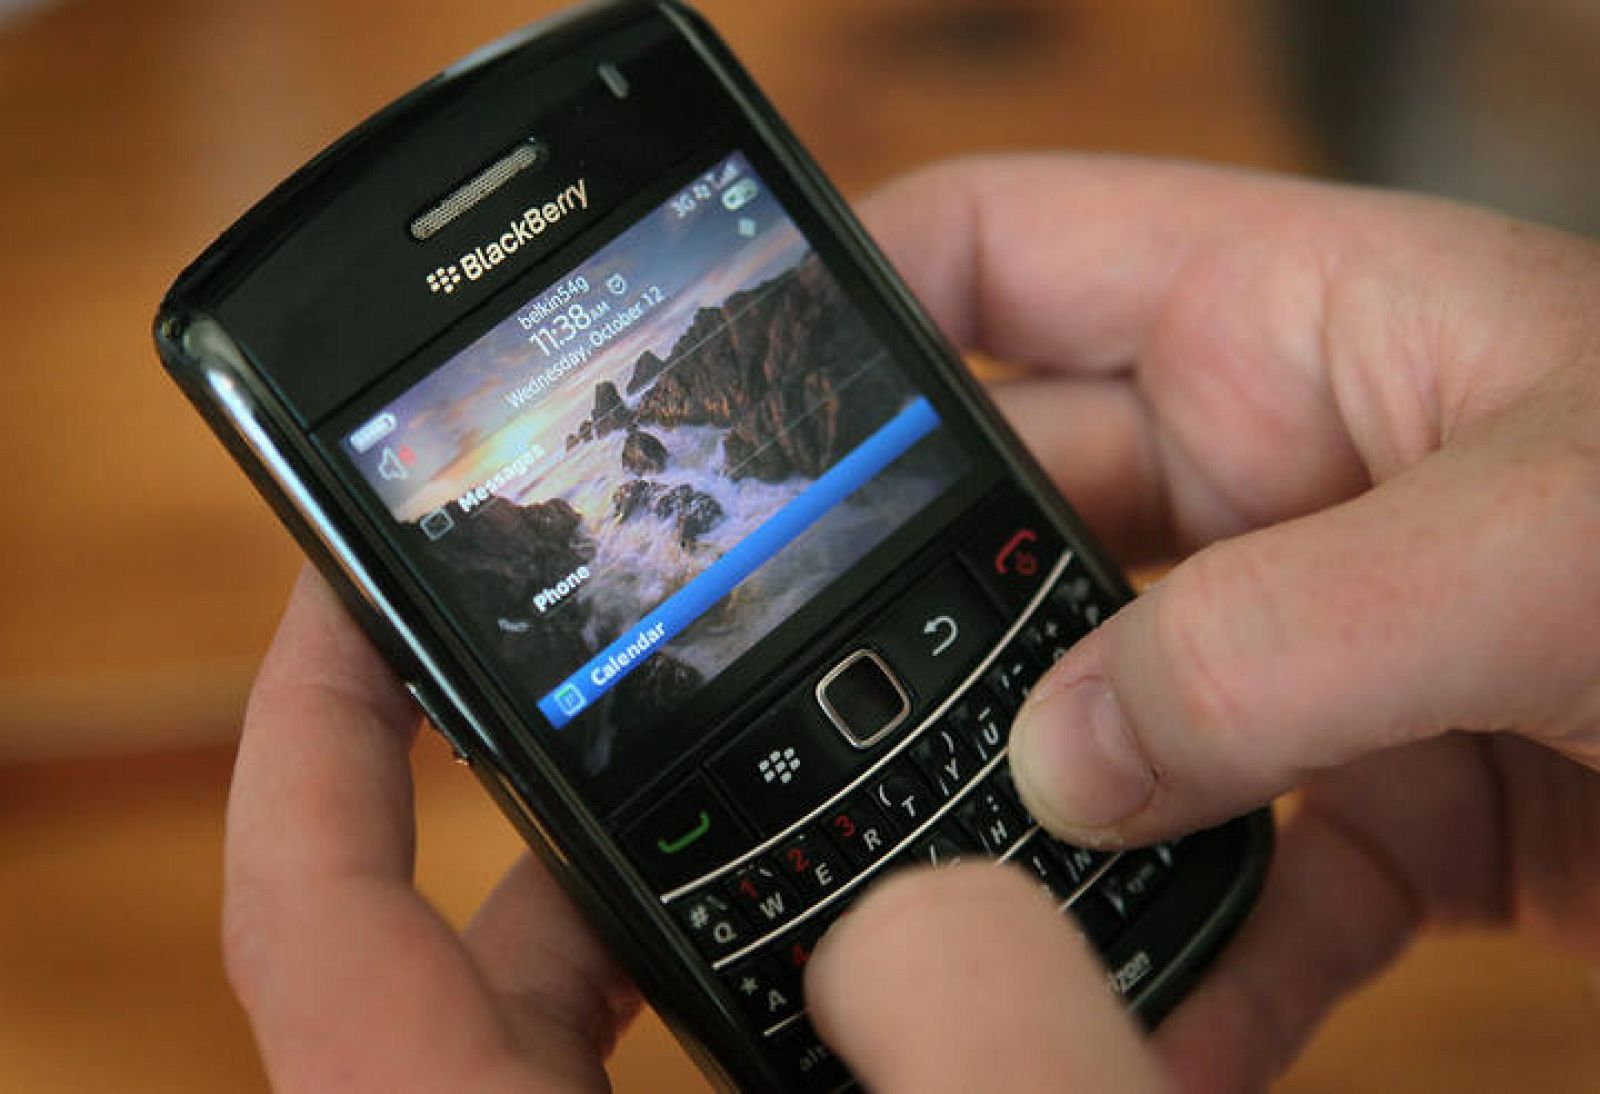 El juez condena al fabricante de Blackberry por infracción de patentes tras tres años de litigio